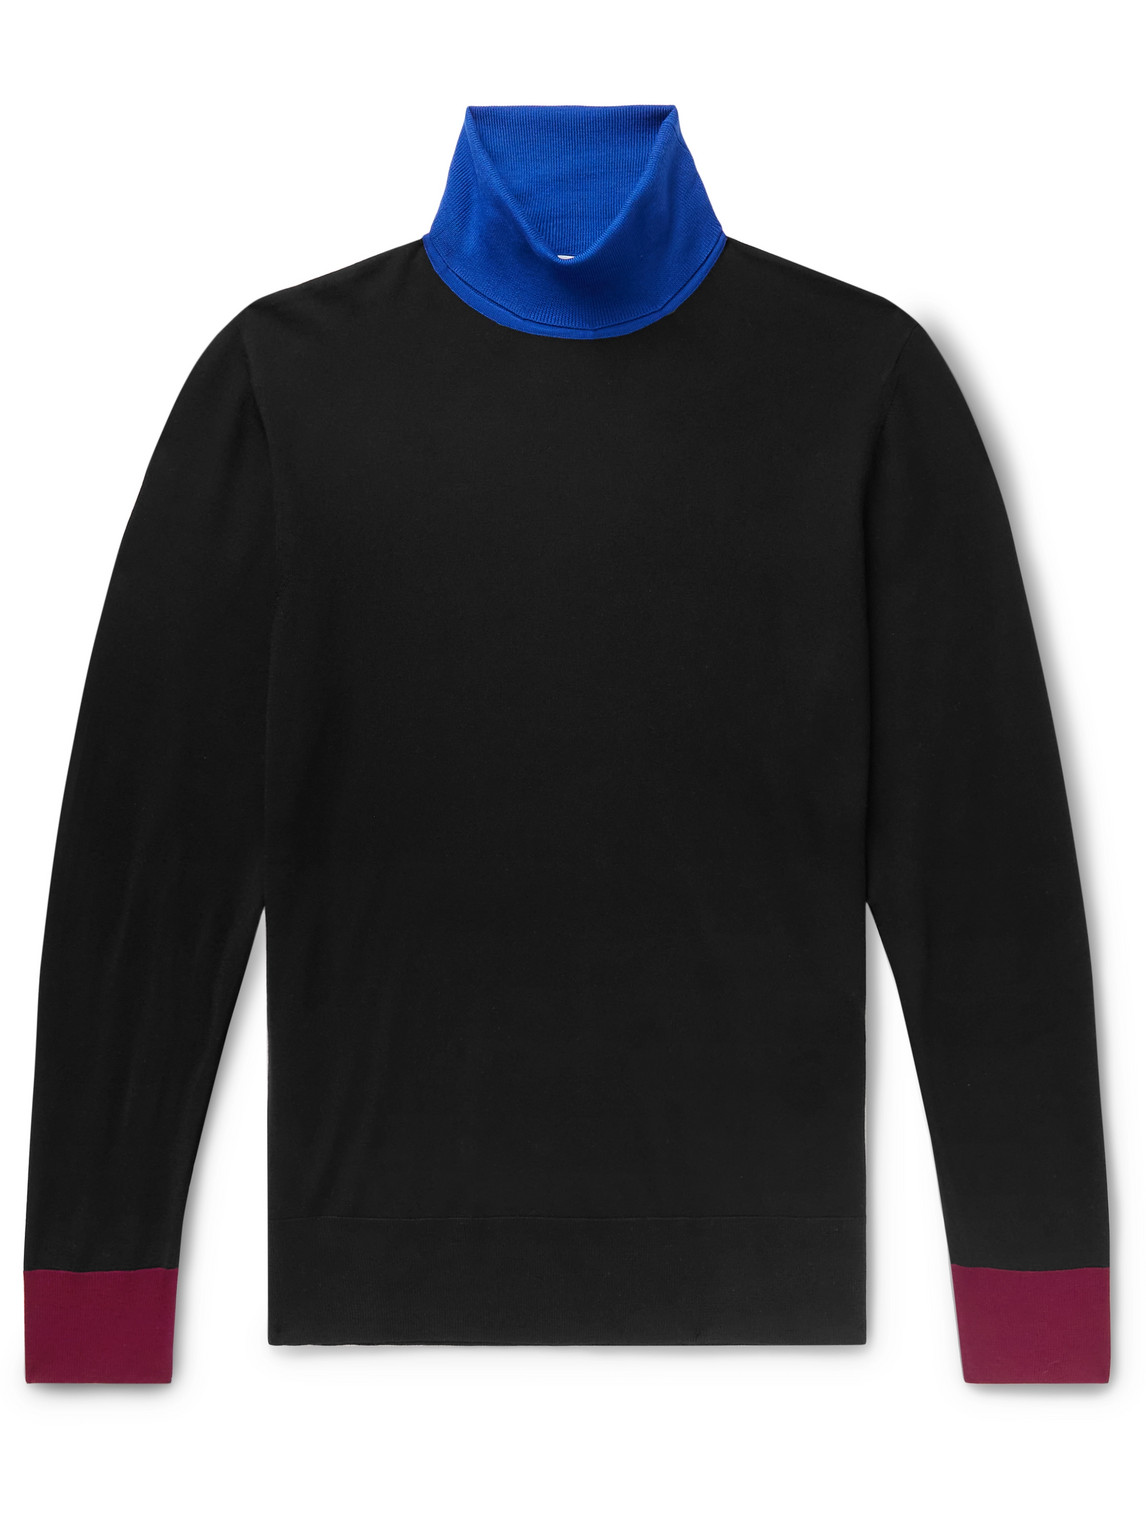 Gabriela Hearst Jermaine Colour-Block Virgin Wool Rollneck Sweater